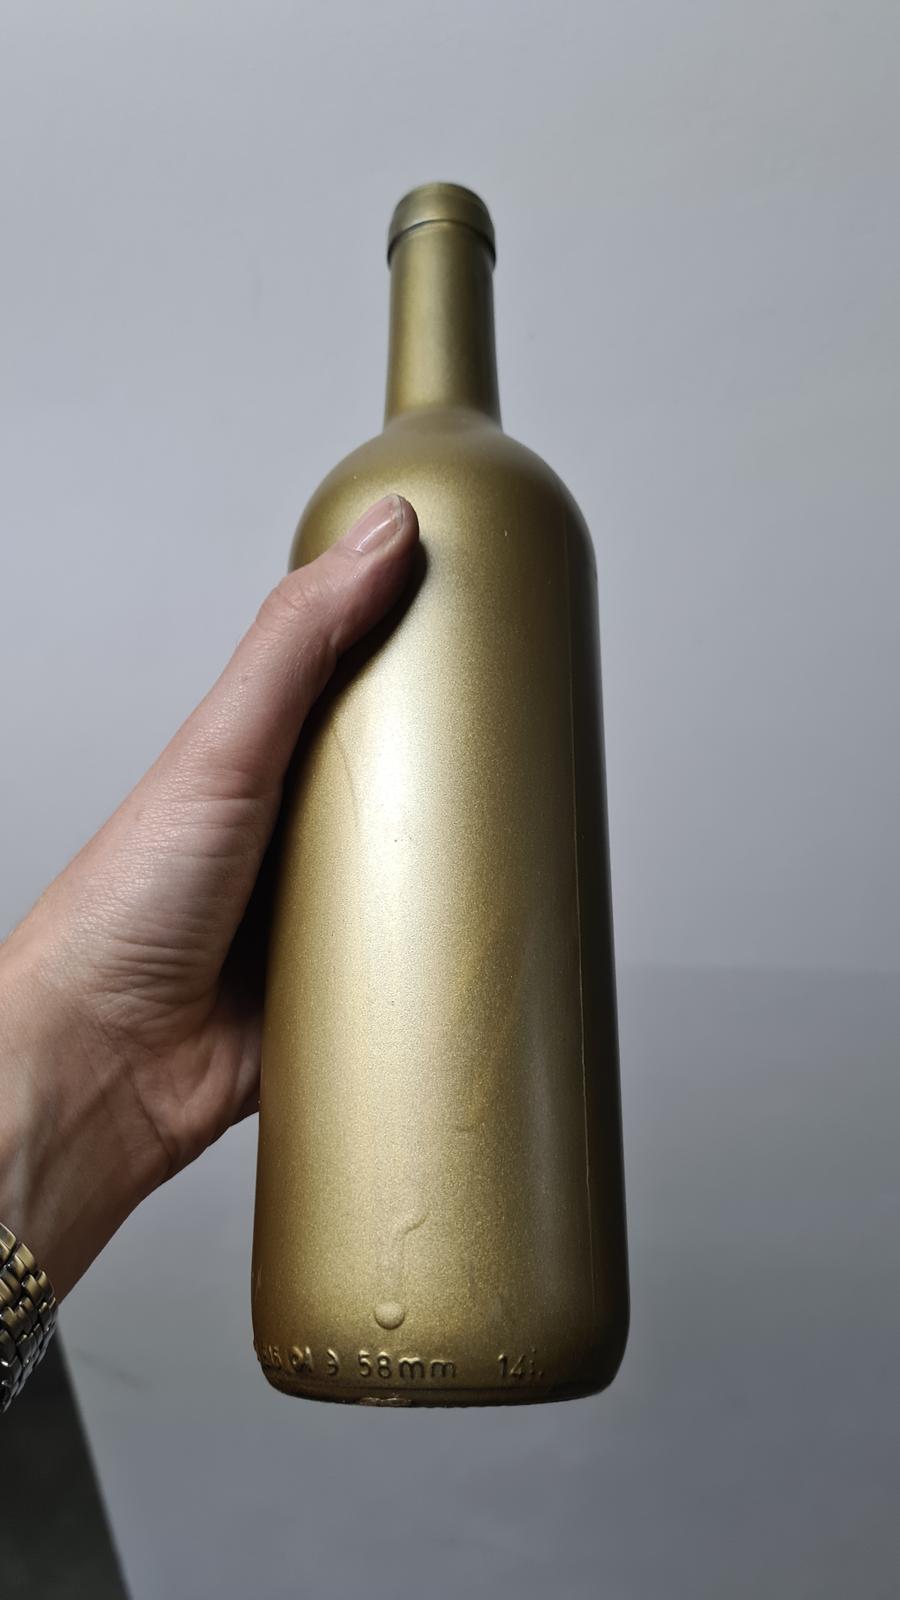 zlaté flašky 7ks - Obrázek č. 1